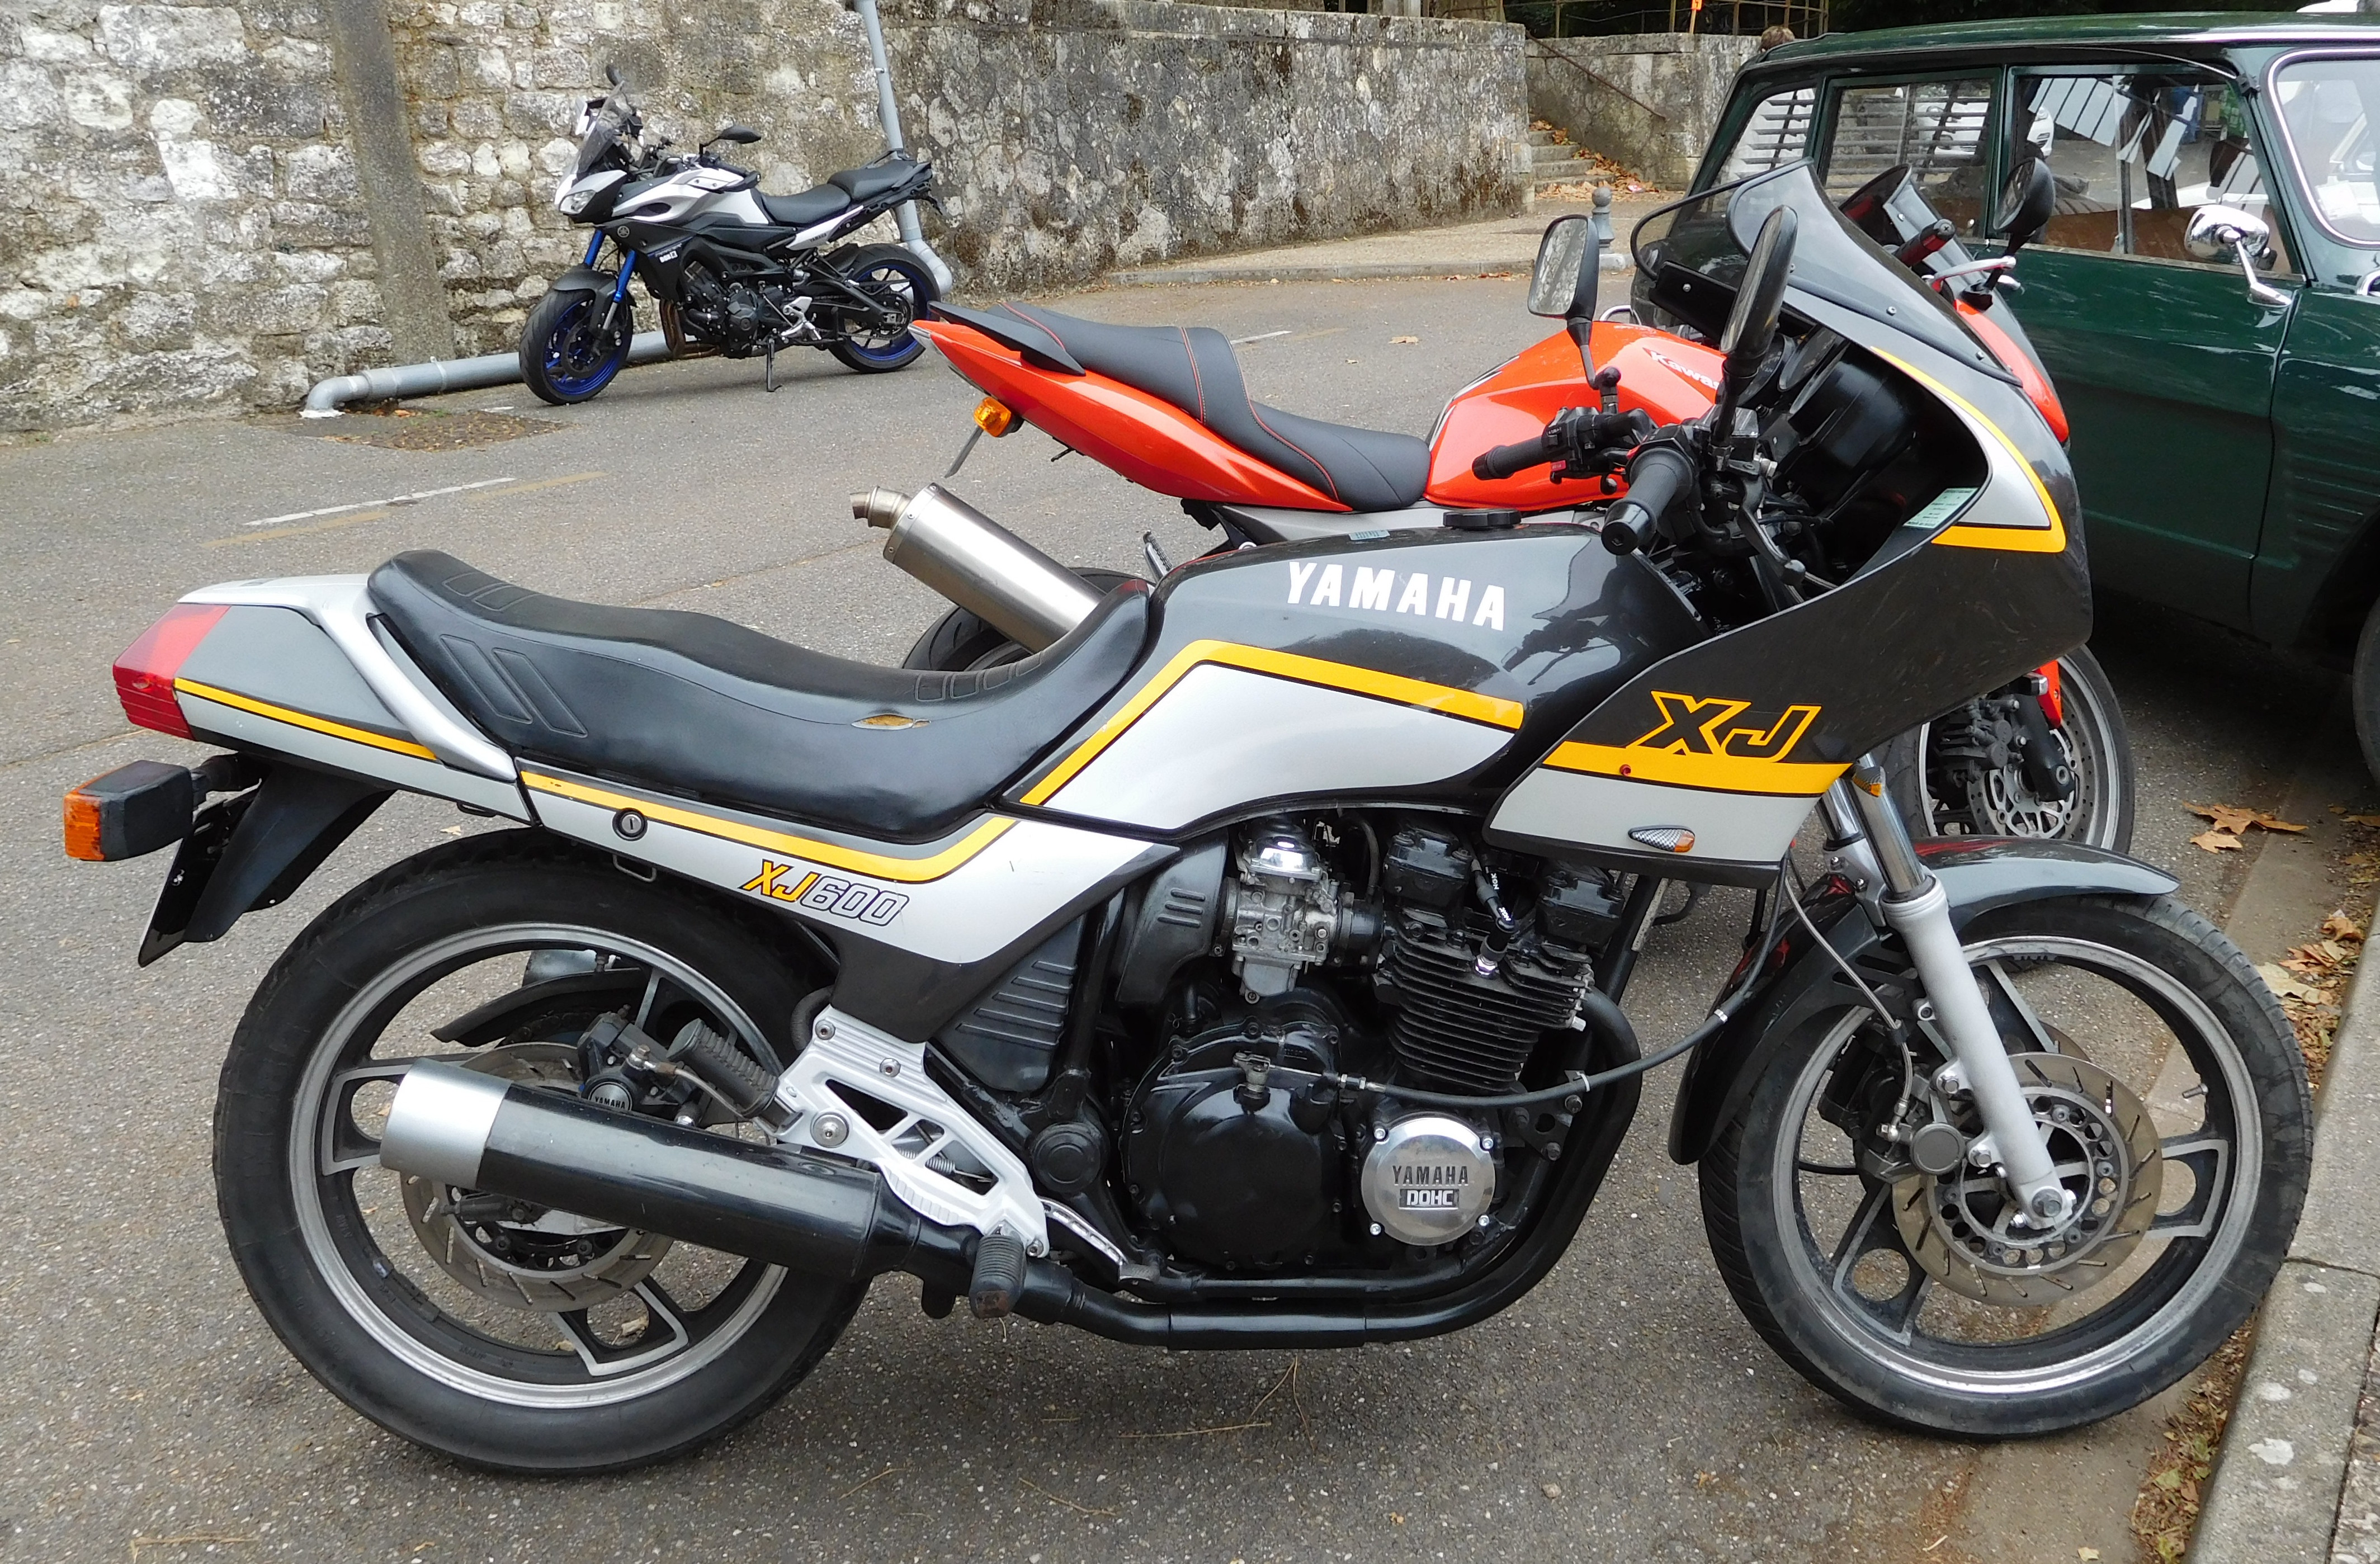 File:Yamaha XJ 600, right view.jpg - Wikimedia Commons